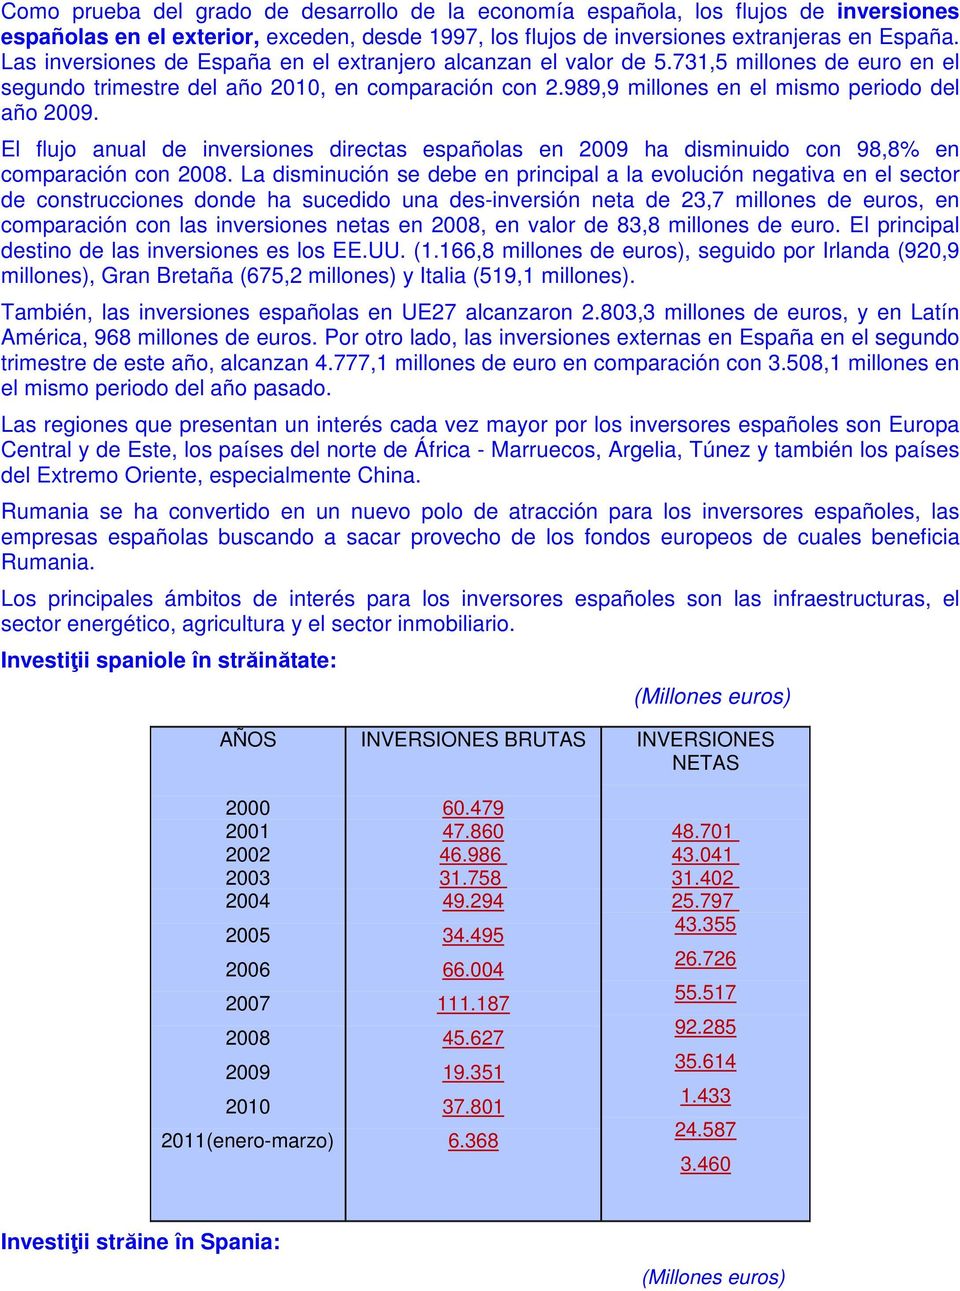 El flujo anual de inversiones directas españolas en 2009 ha disminuido con 98,8% en comparación con 2008.